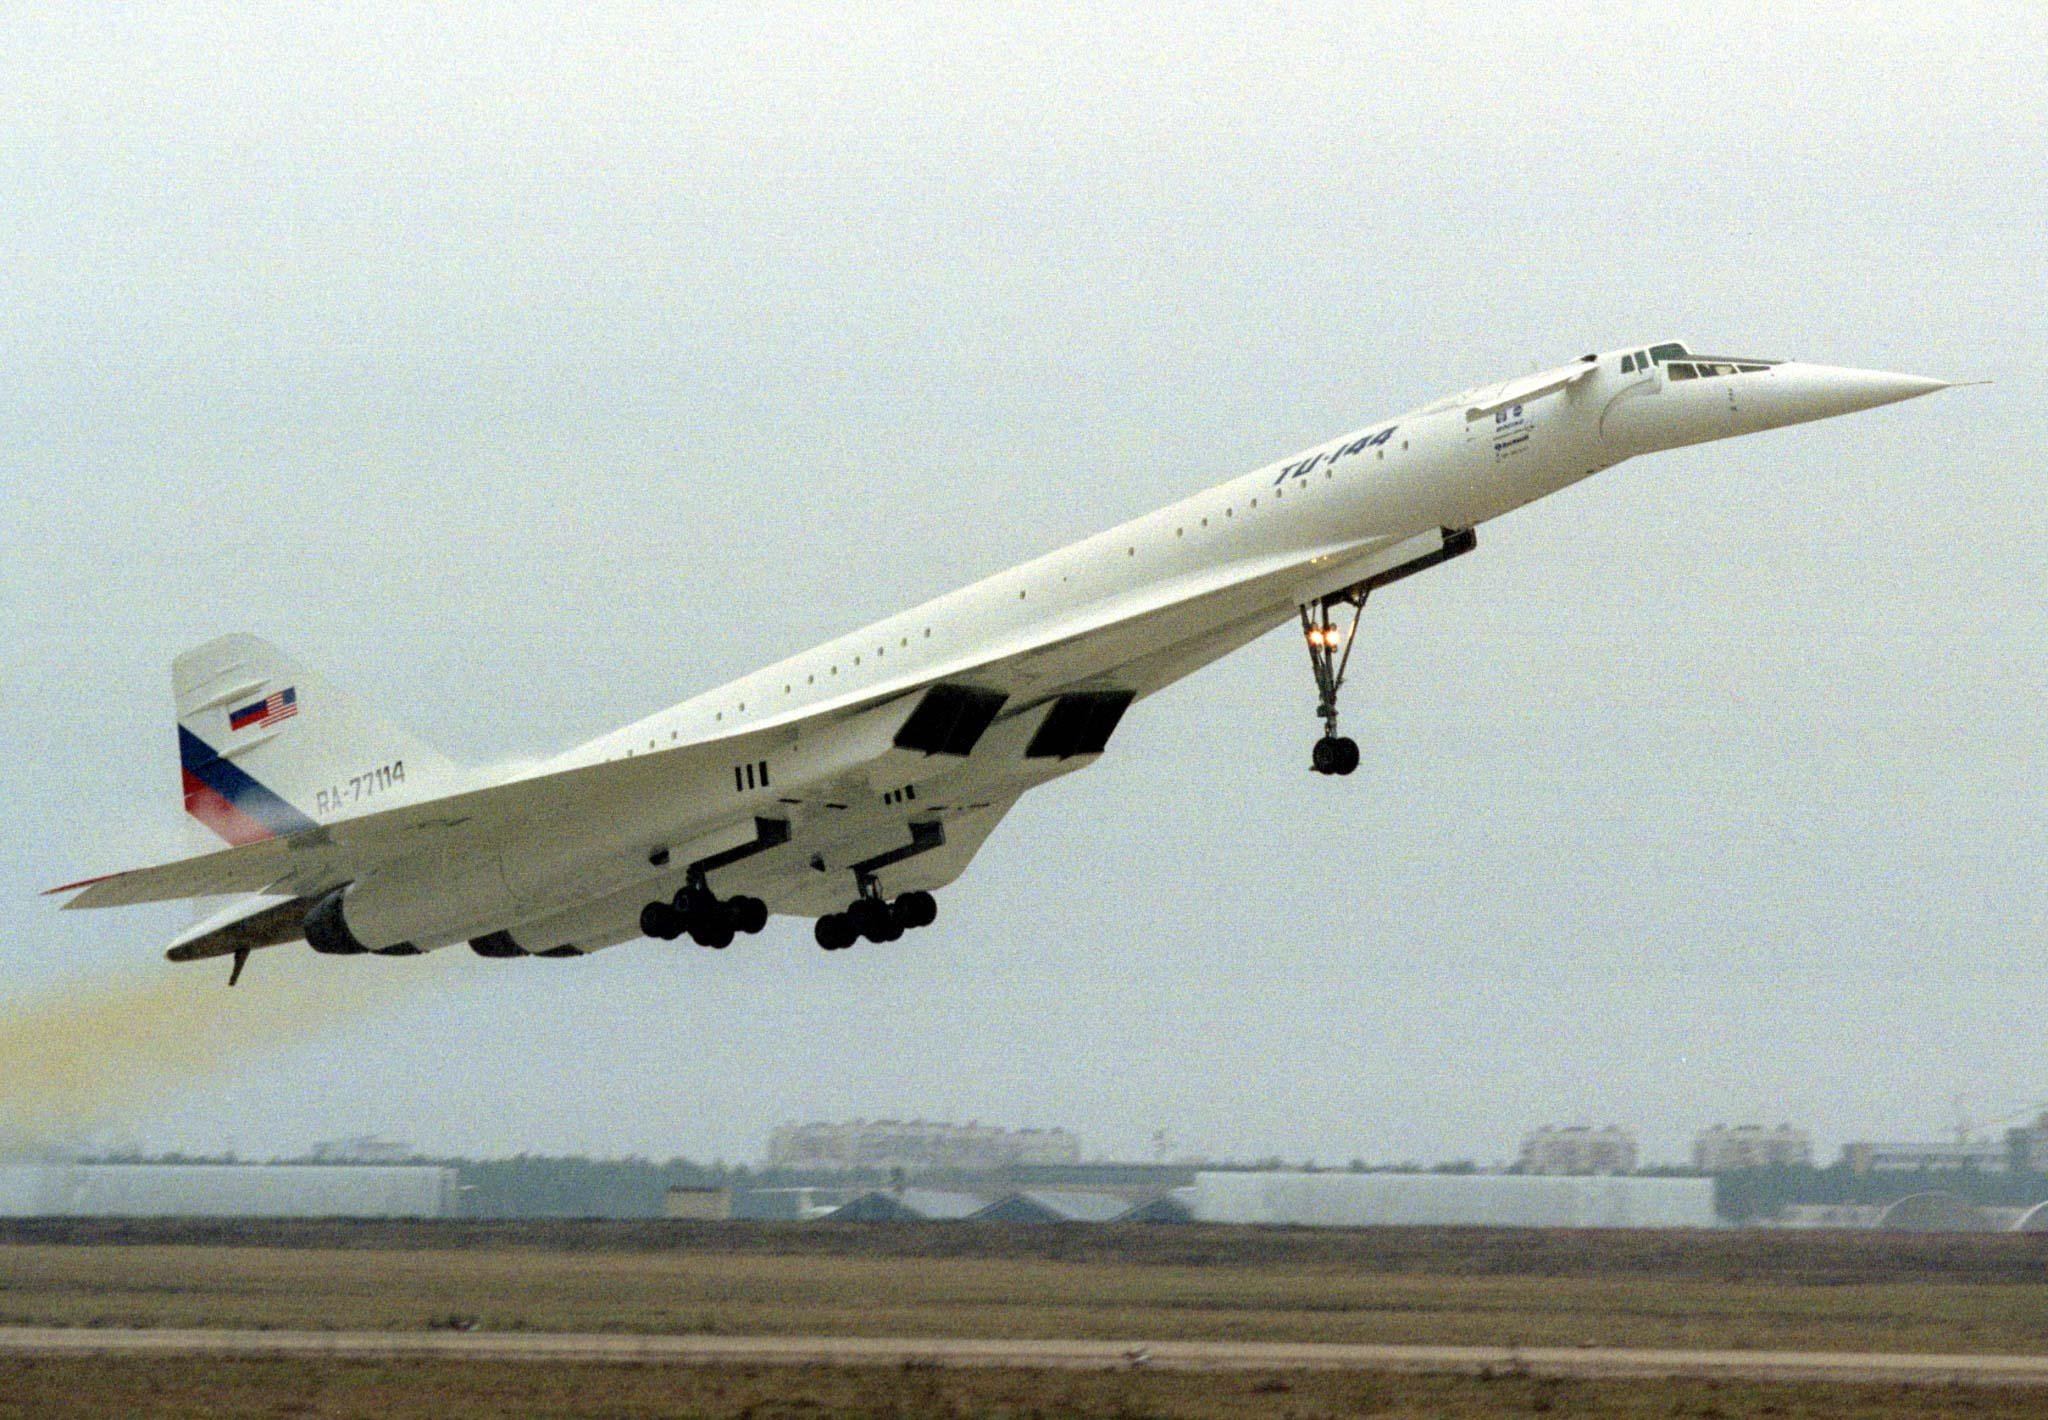 Concordes konnten unglaubliche Geschwindigkeiten von bis zu 2.179 km/h erreichen